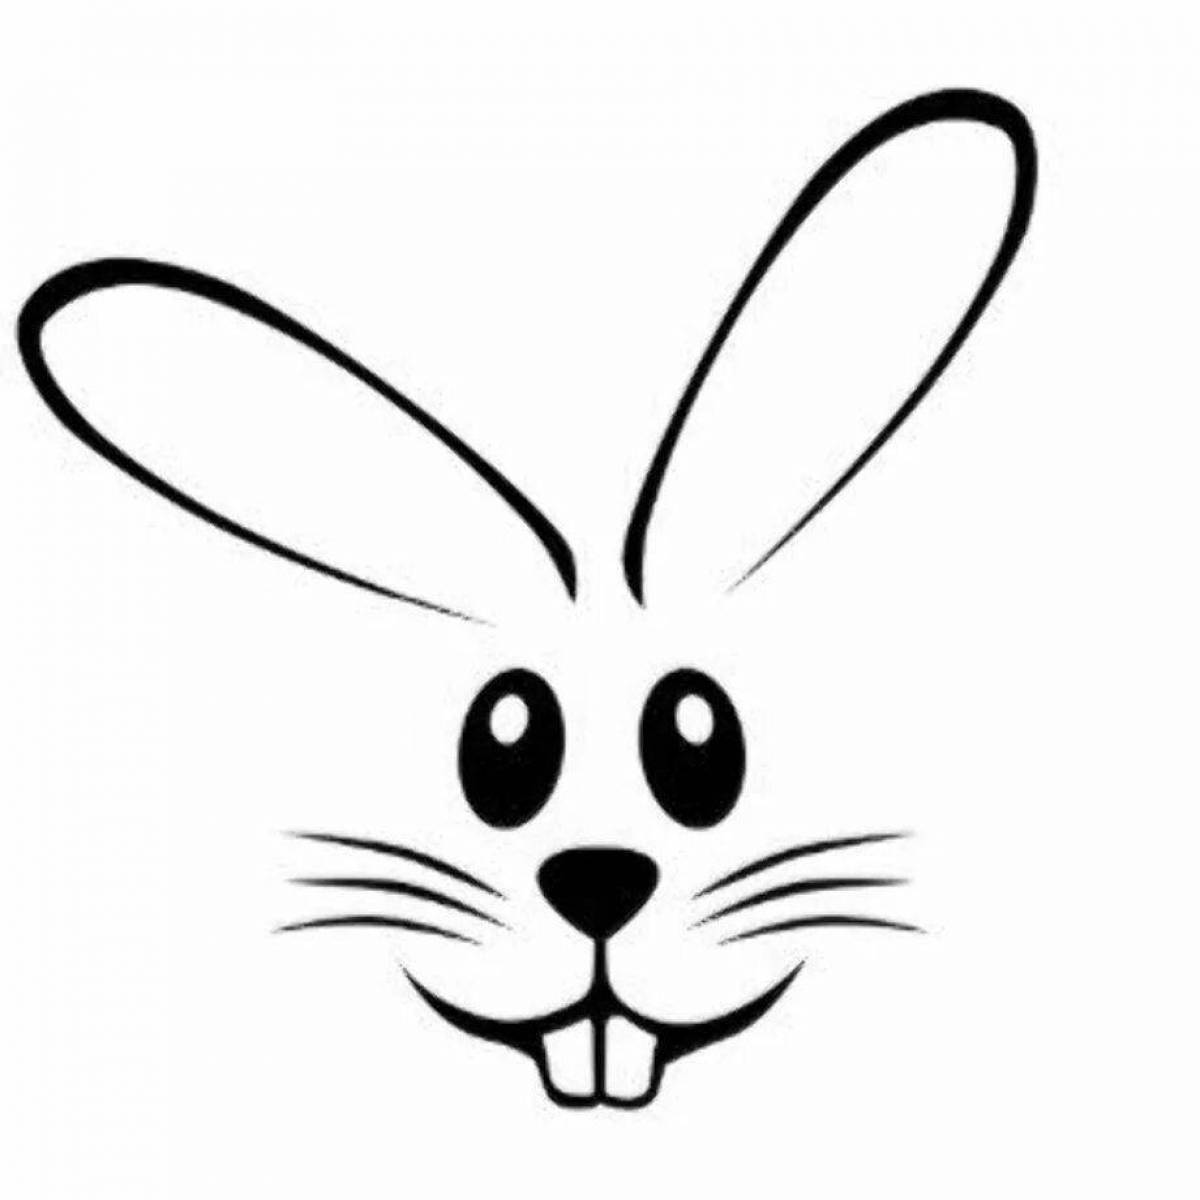 Handy Bunny Coloring Page